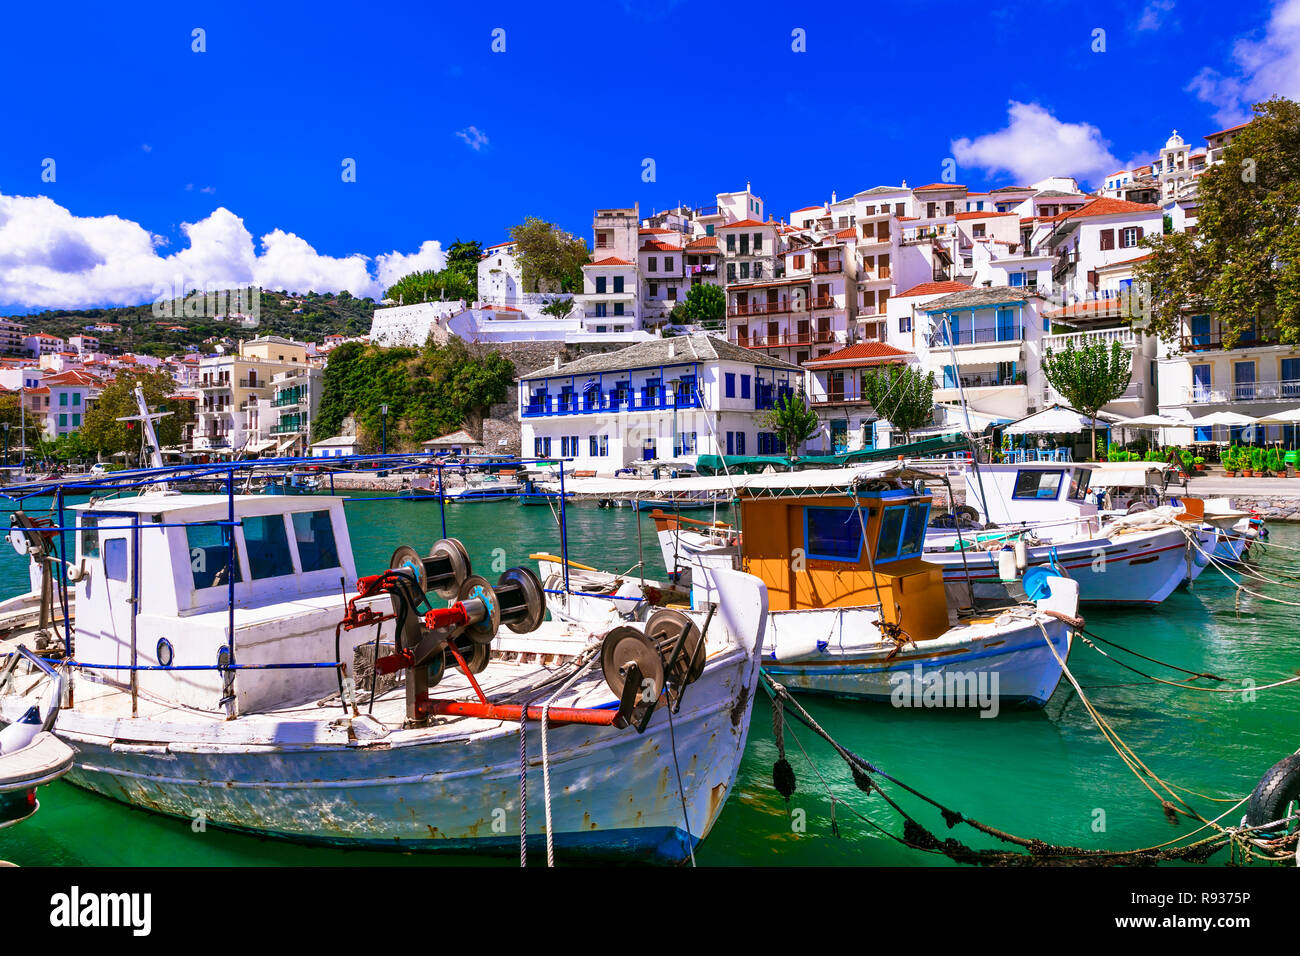 Hermosa isla Skopelos,ver con barcos de pesca tradicionales y casas blancas,Grecia. Foto de stock